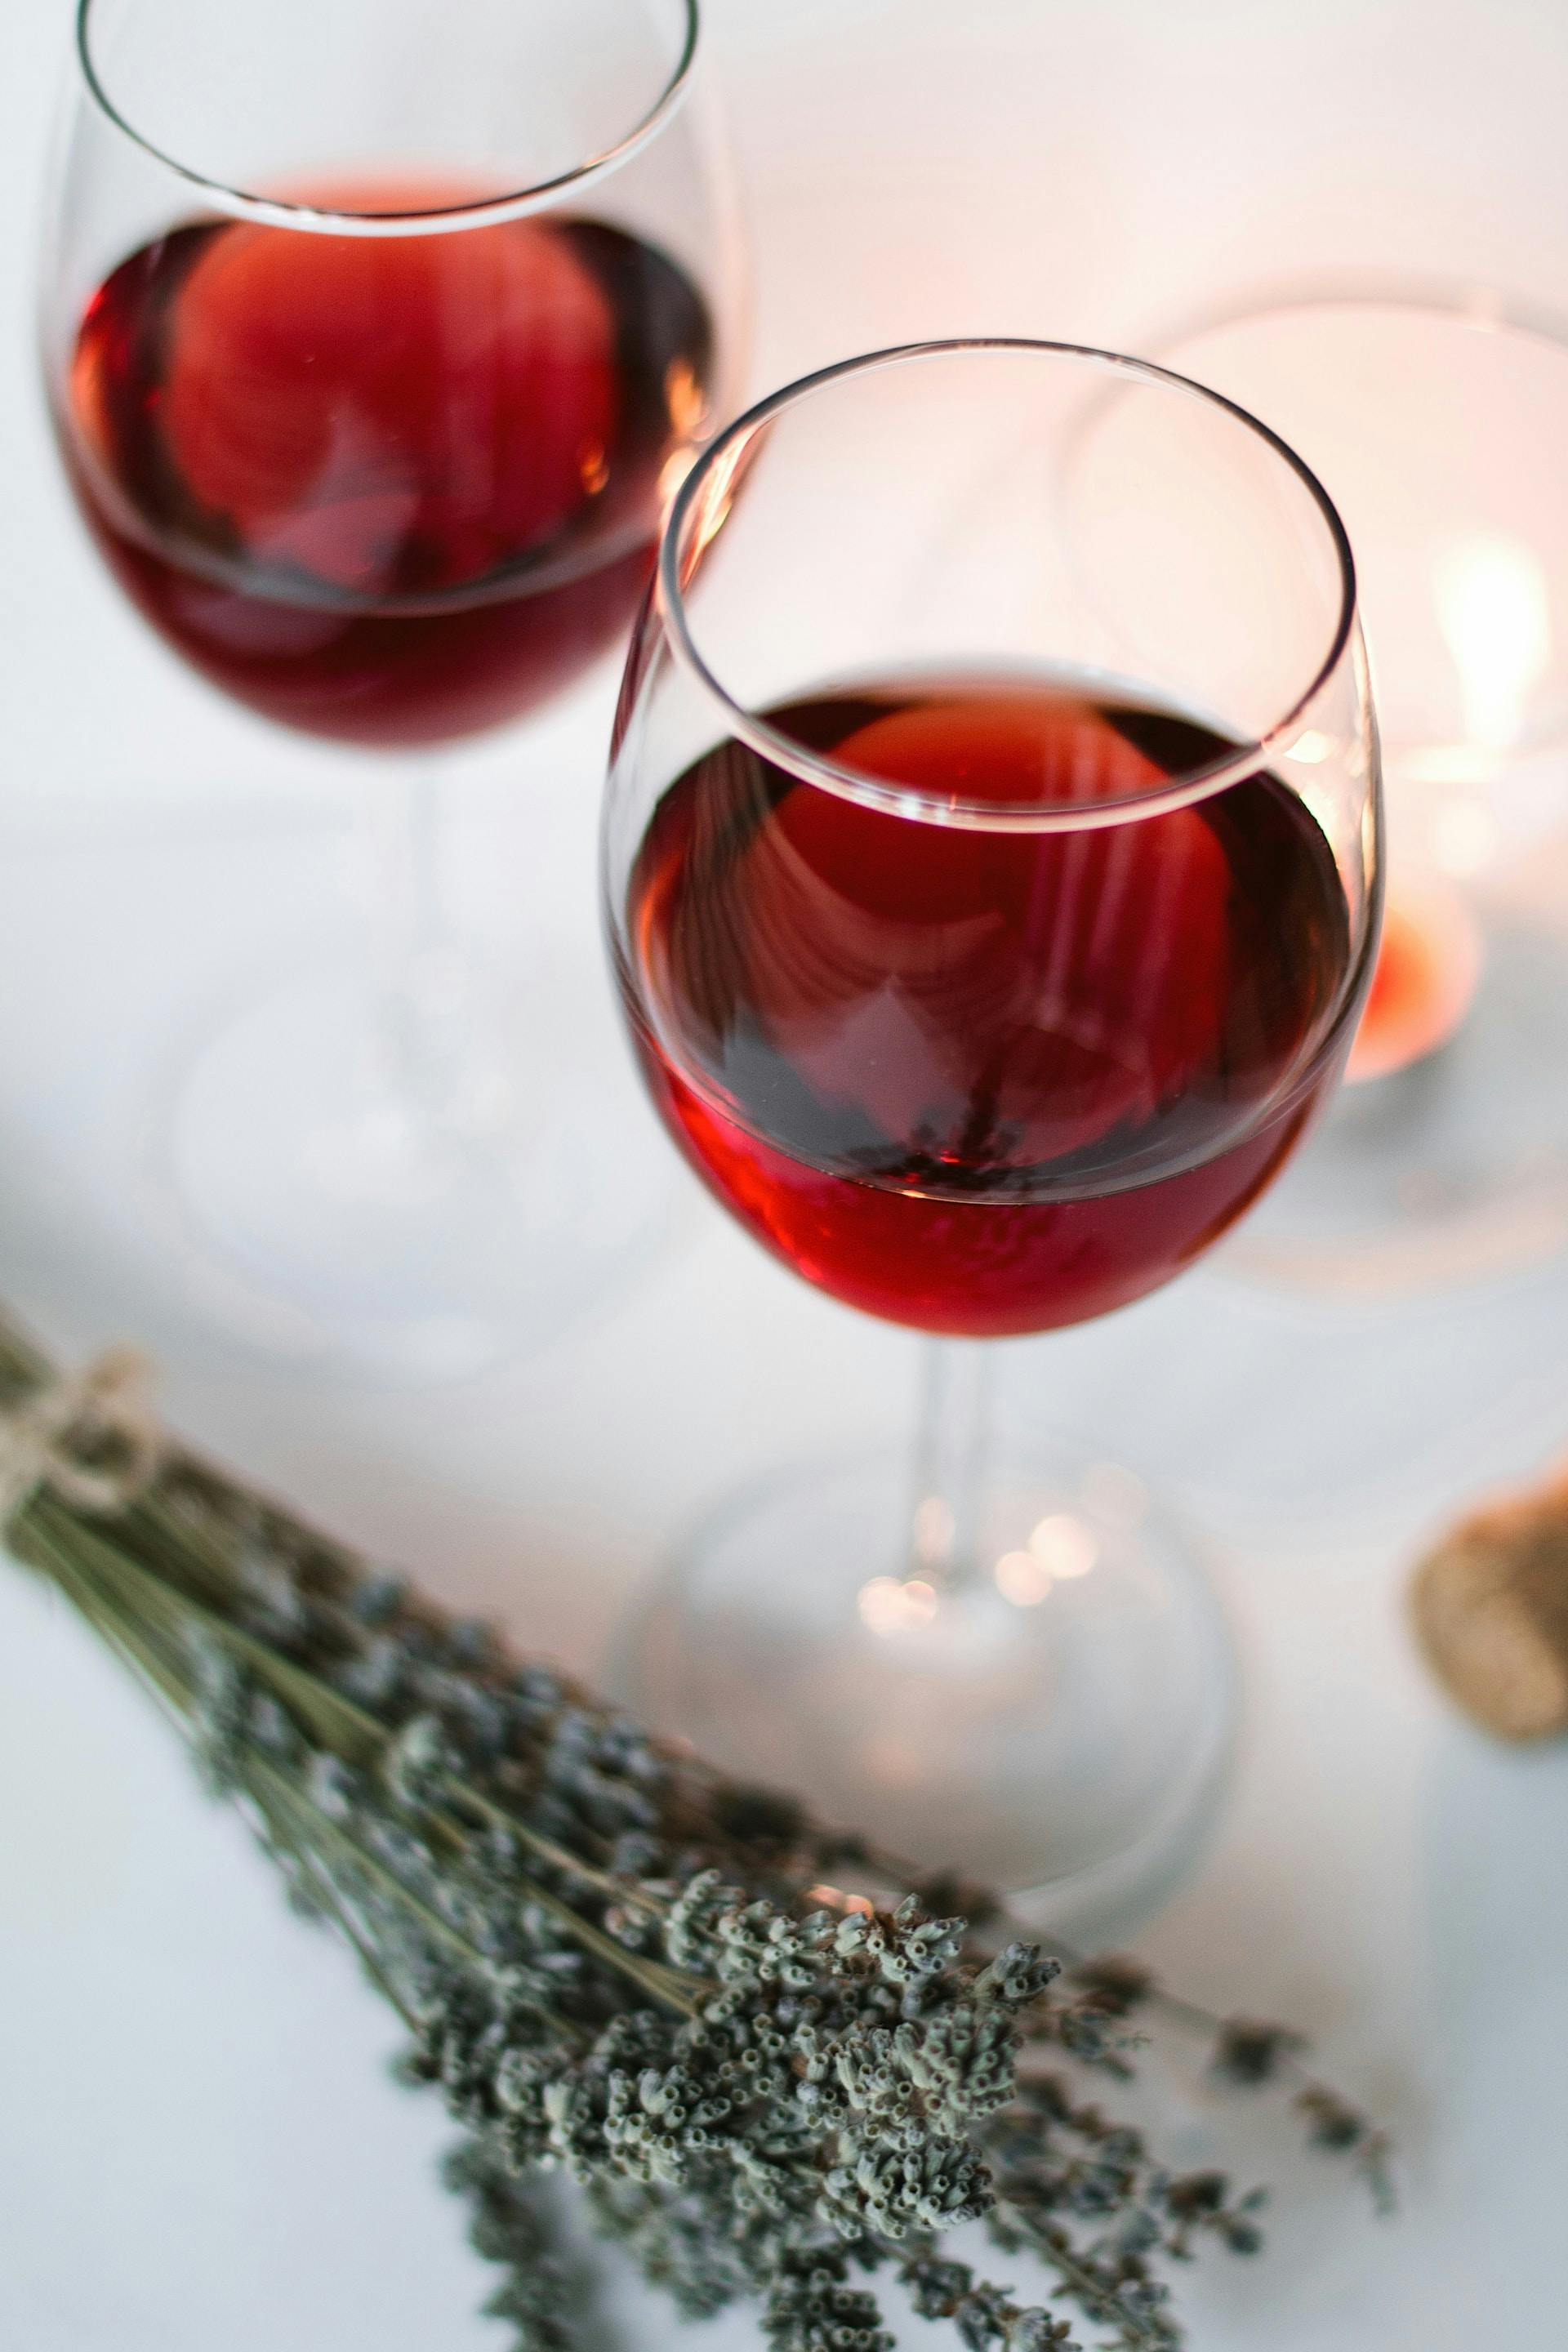 2 Weingläser auf weißer Tischdecke mit roter Flüssigkeit drinnen und Kräuter daneben